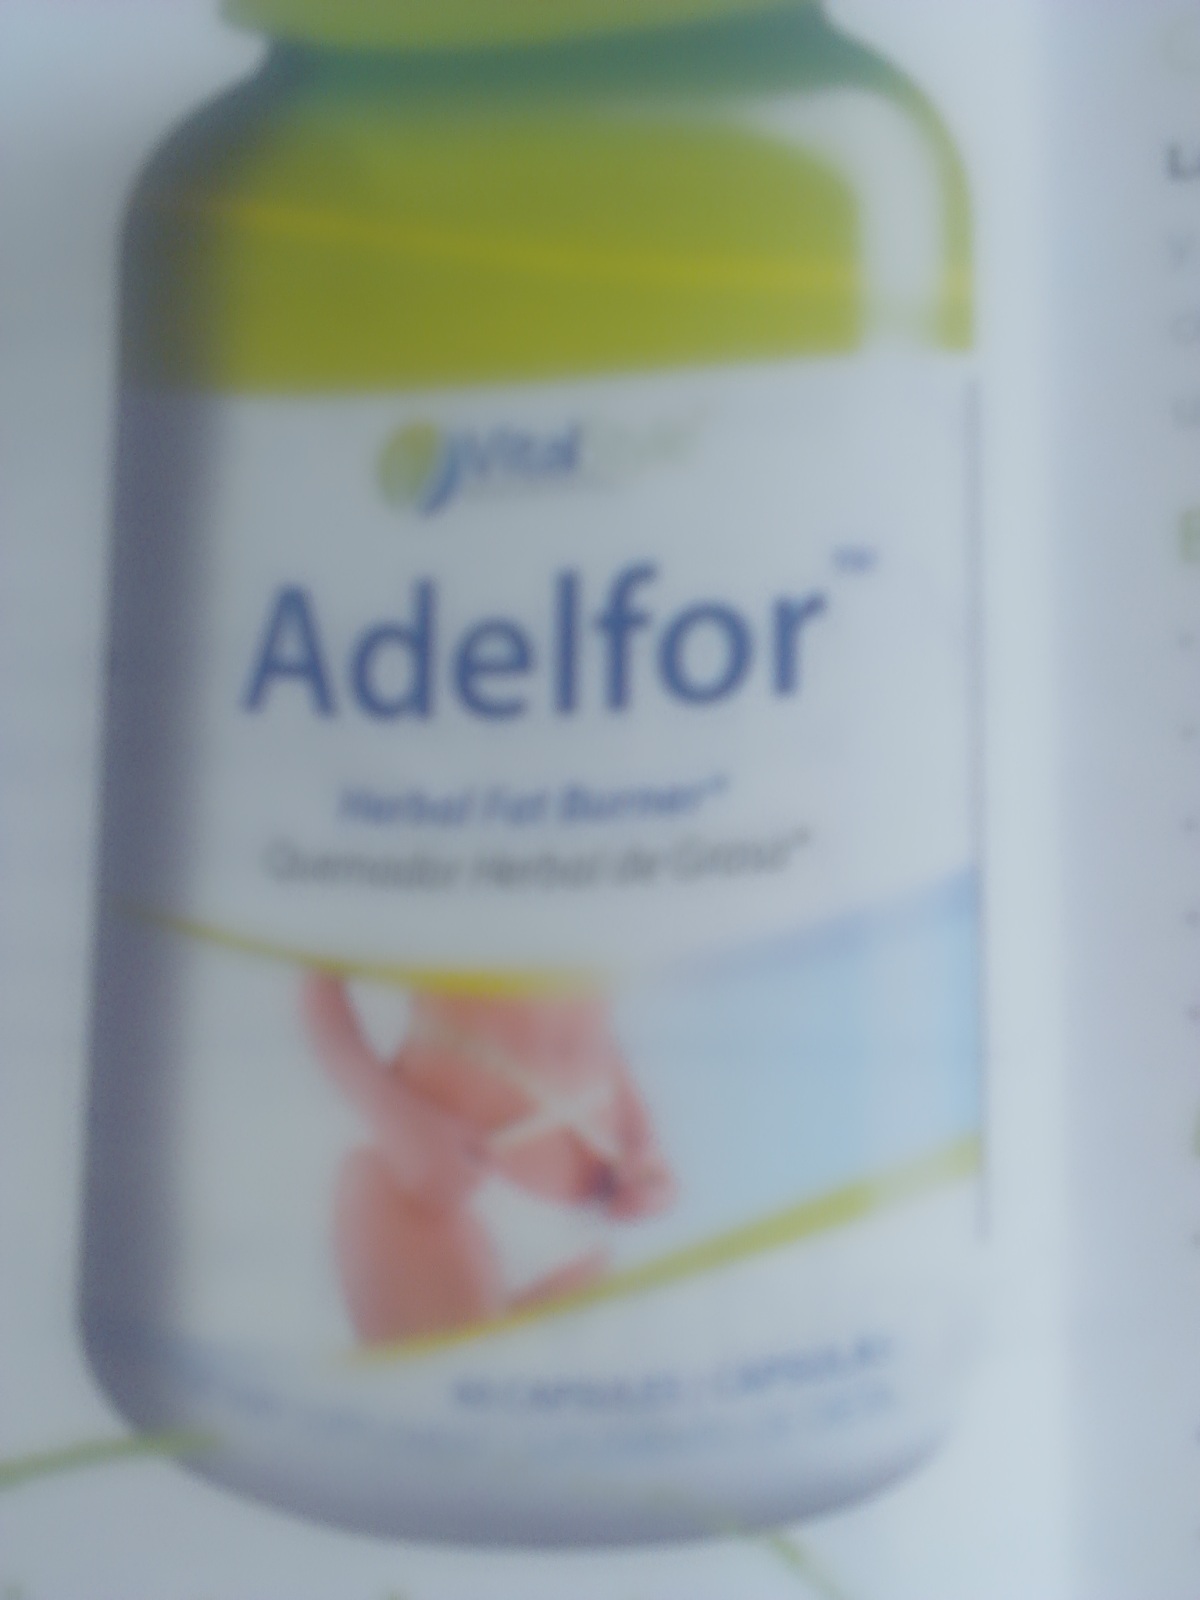 Adelfor™